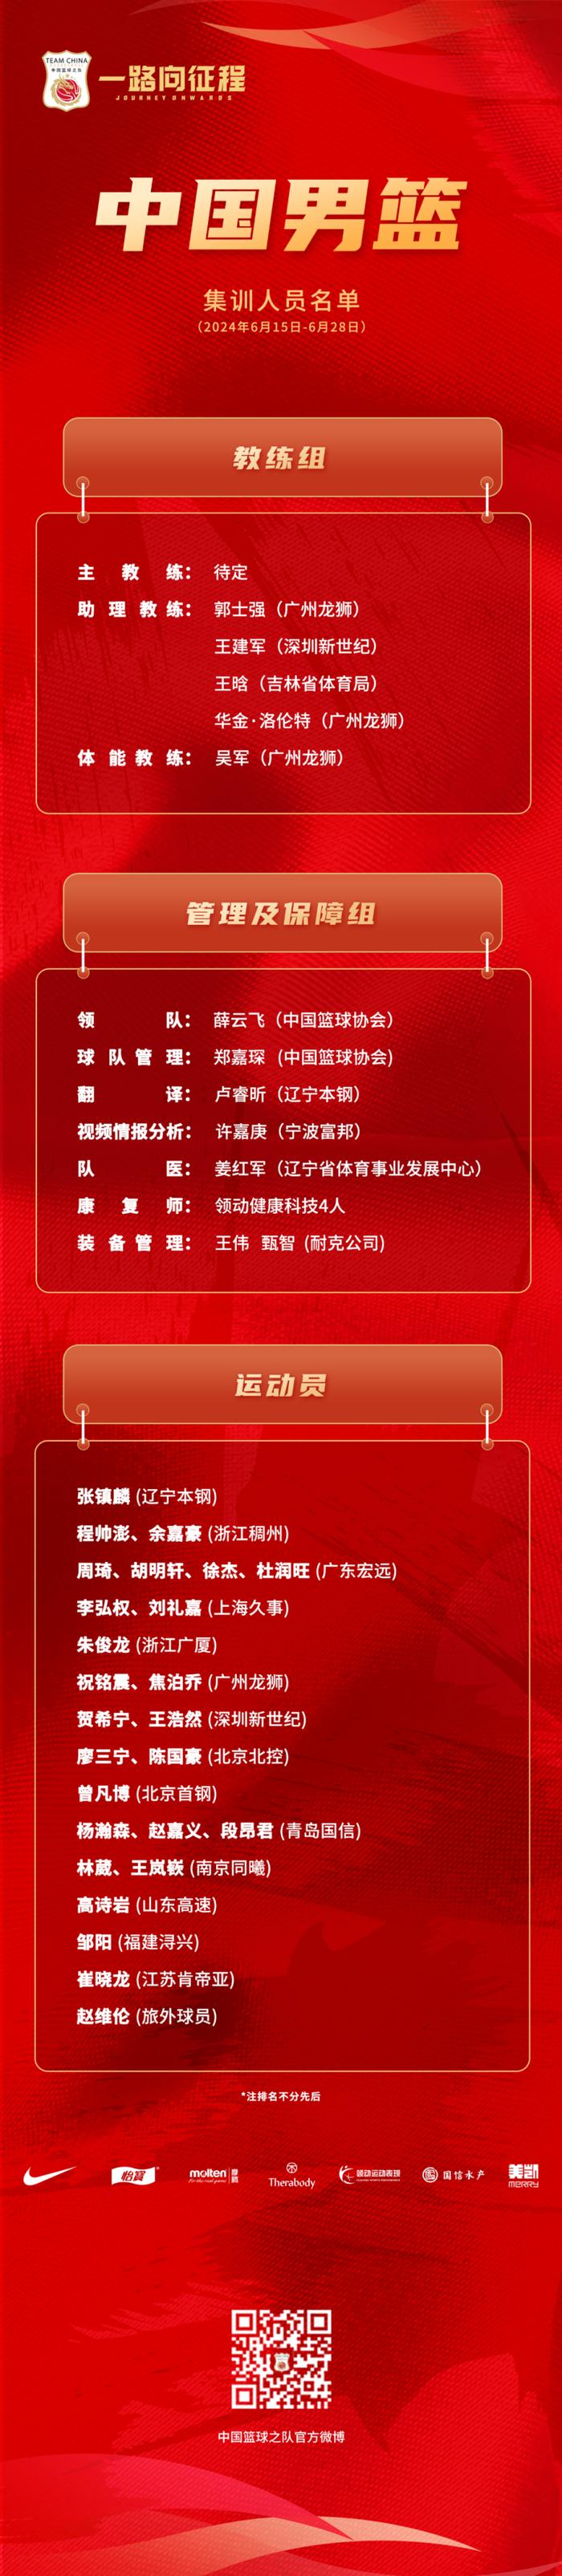 中国男篮公布集训名单,新任中国男篮主教练选聘工作已启动